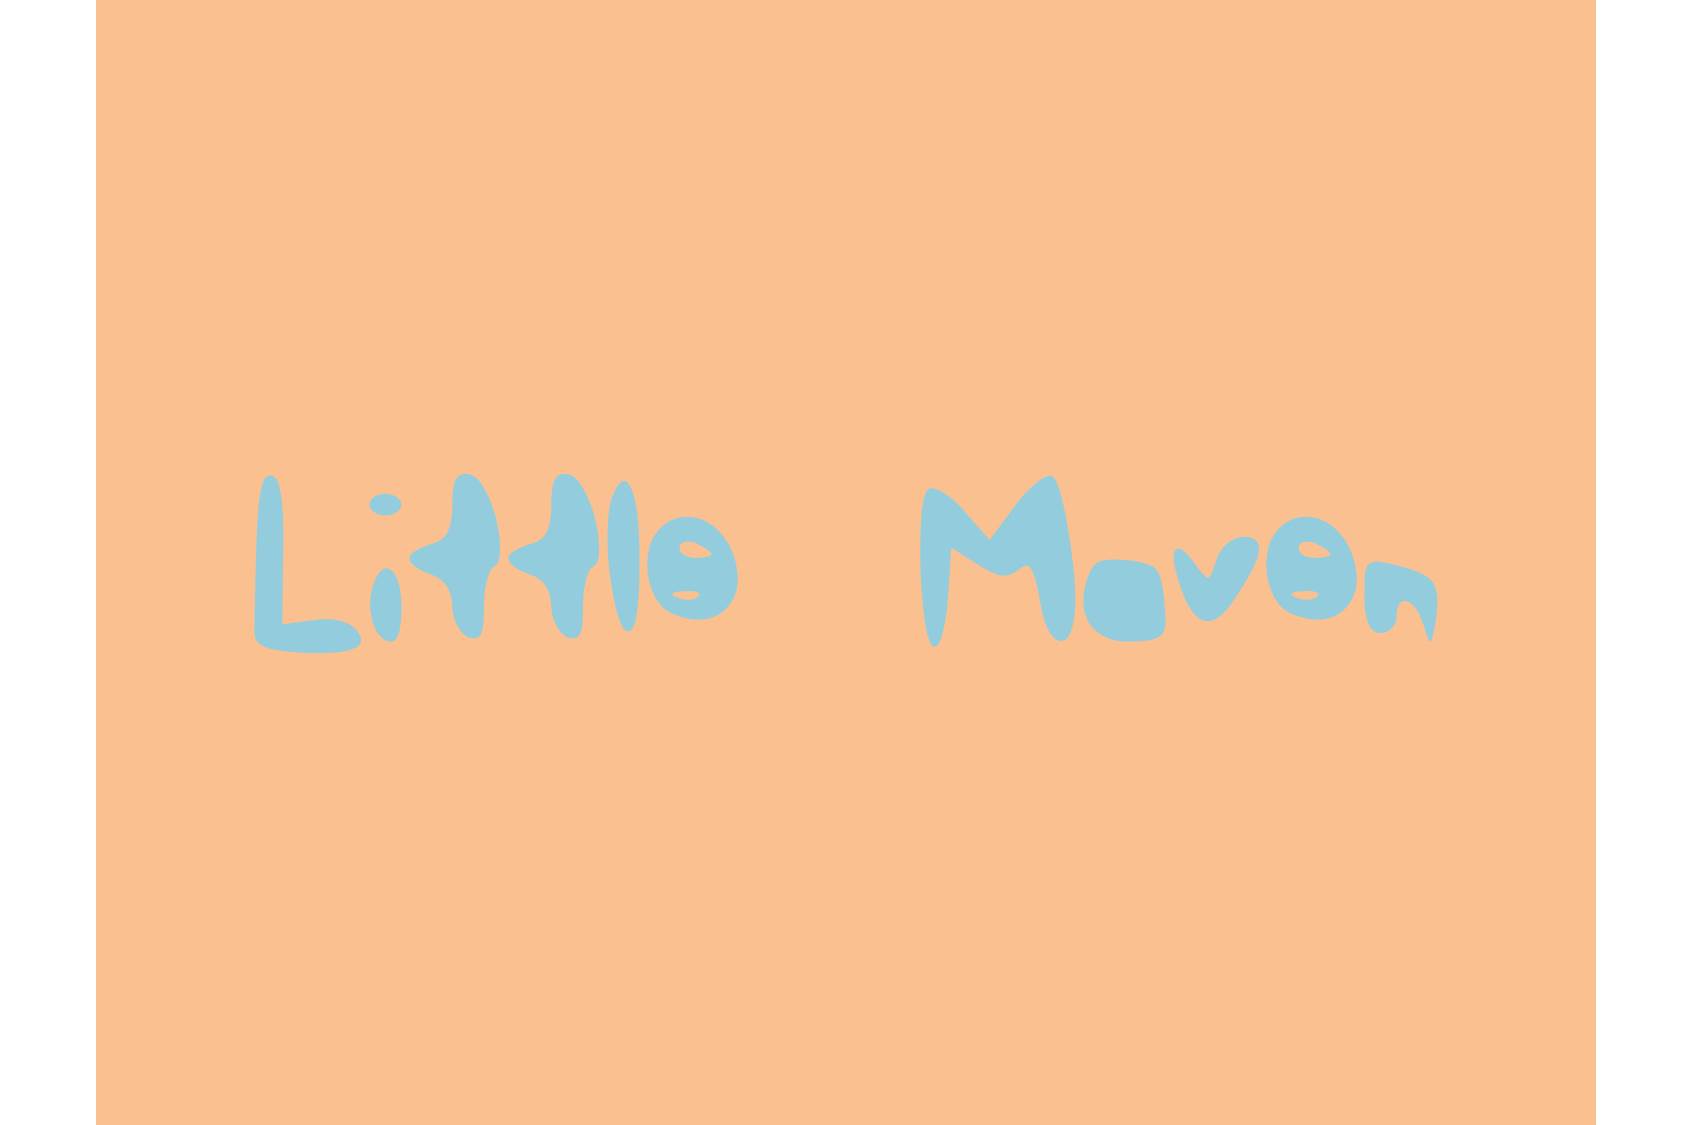 LittleMaven